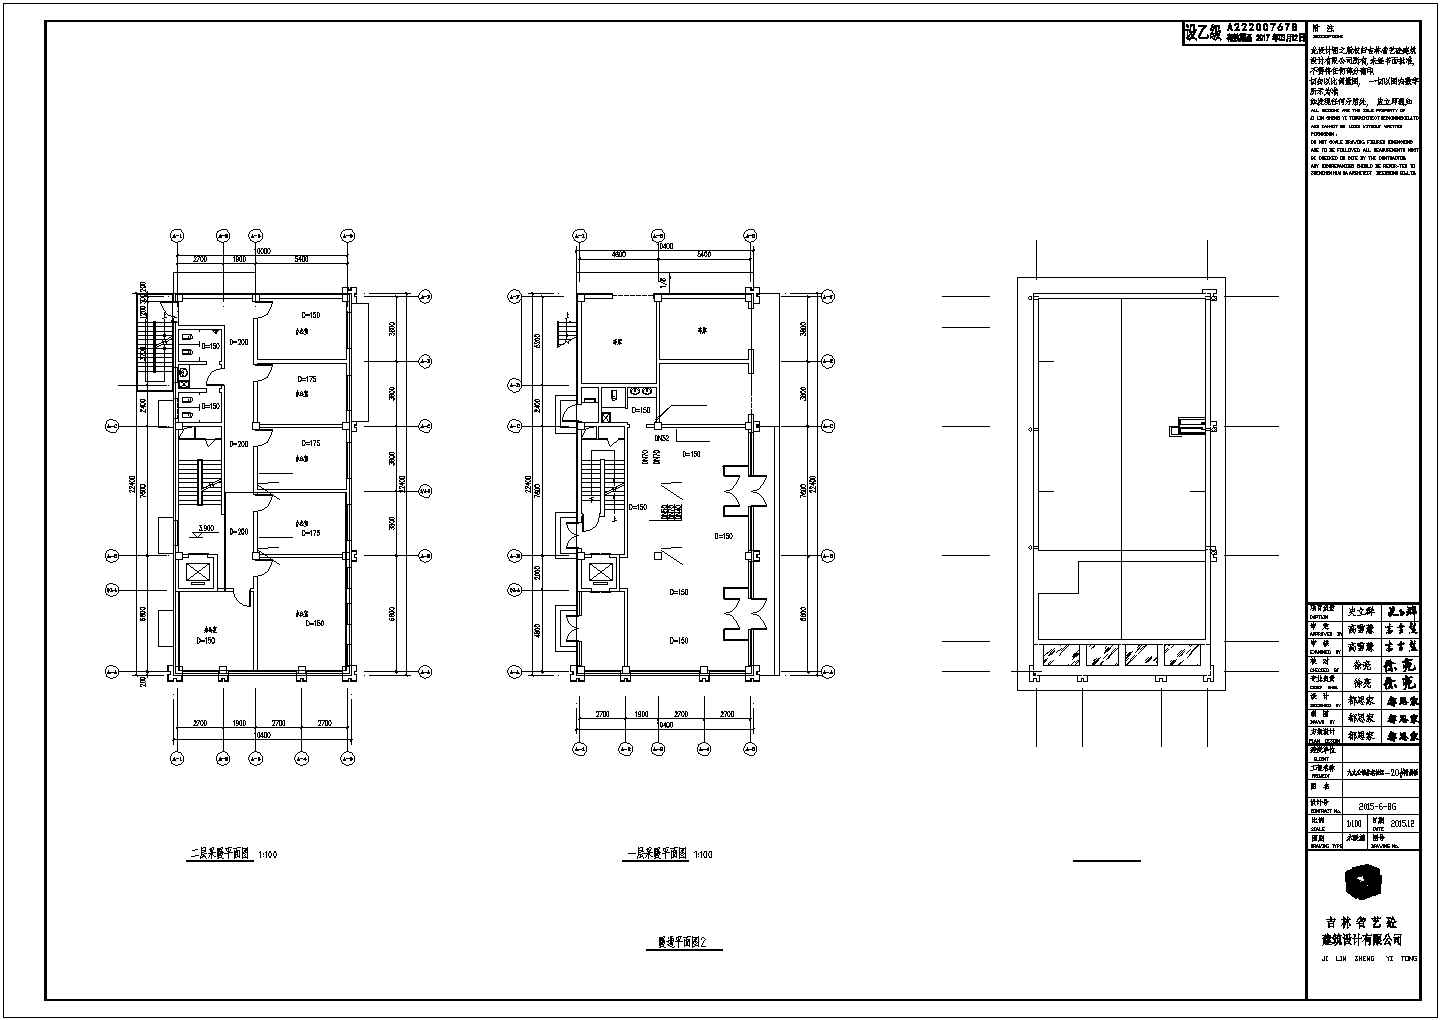 衡阳市某大学氮肥厂5层框架结构办公楼水暖风系统全套设计CAD图纸